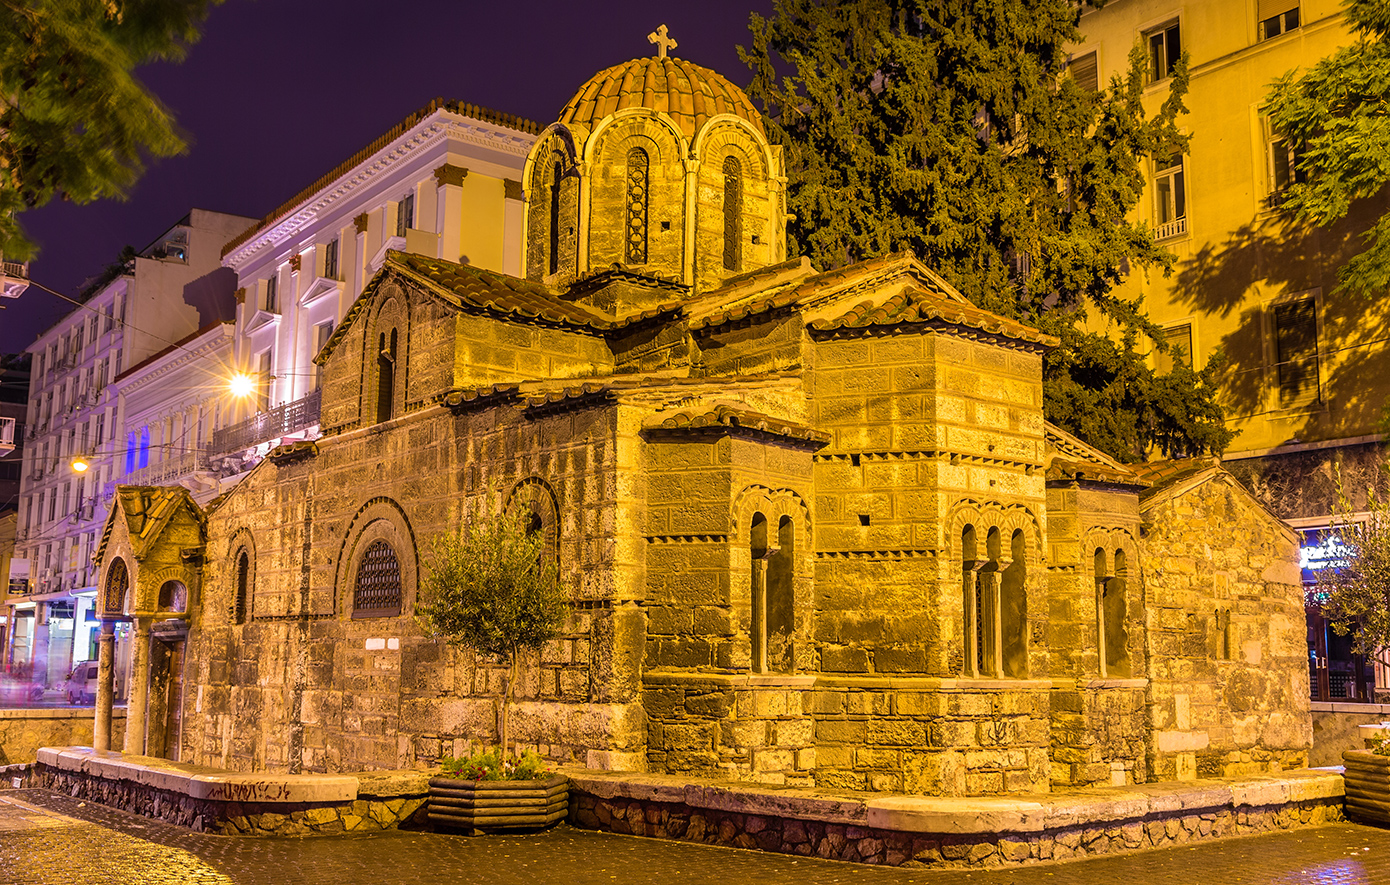 Τρεις ιστορικές εκκλησίες στο κέντρο της Αθήνας για να ακούσετε το τροπάριο της Κασσιανής